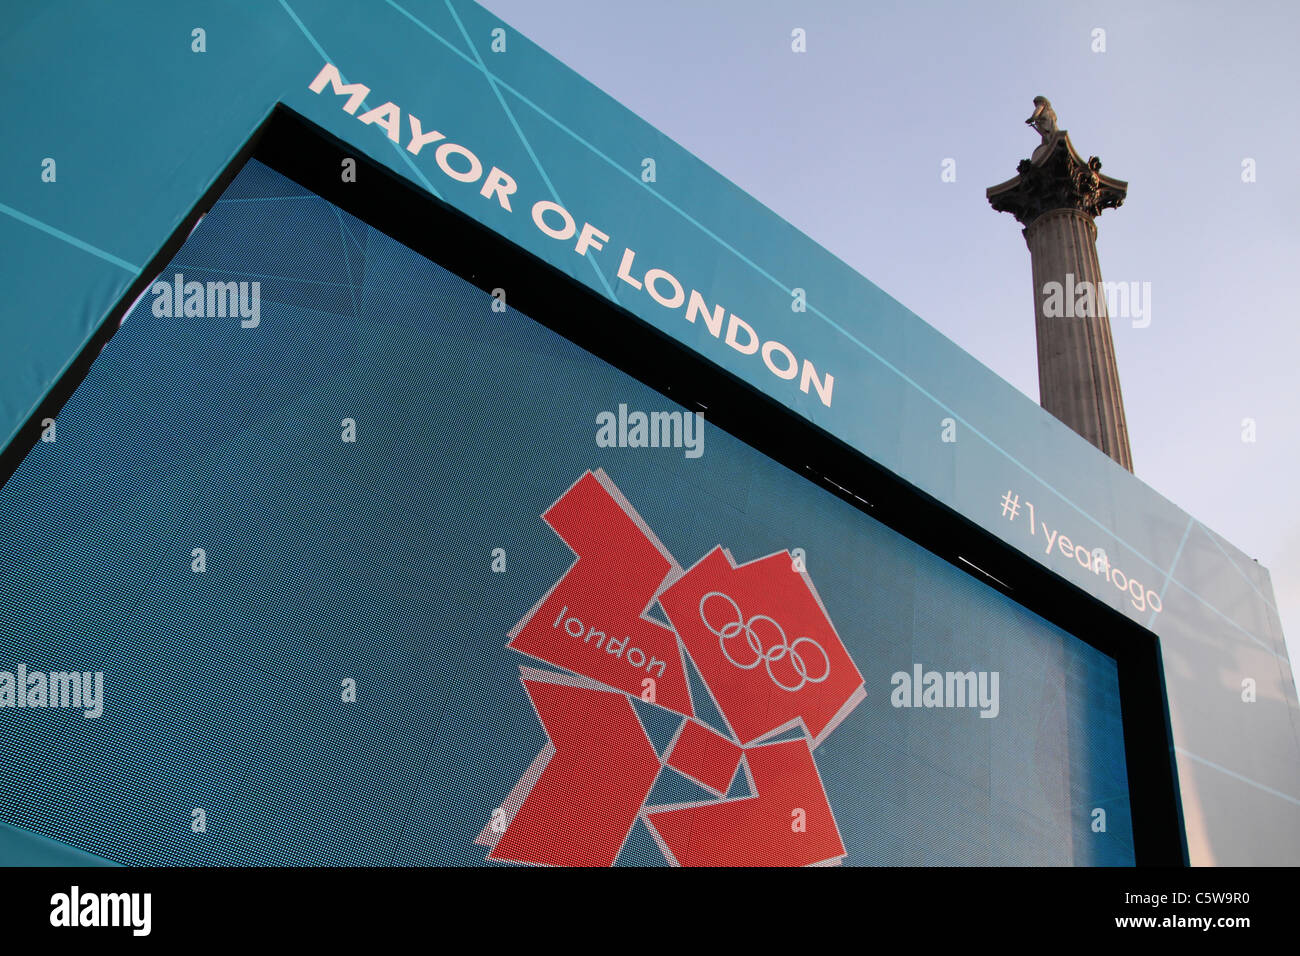 VEREINIGTES KÖNIGREICH. 1 Jahr bis 2012 Olympischen Spiele Countdown Zeremonie in Trafalgar Sq Stockfoto